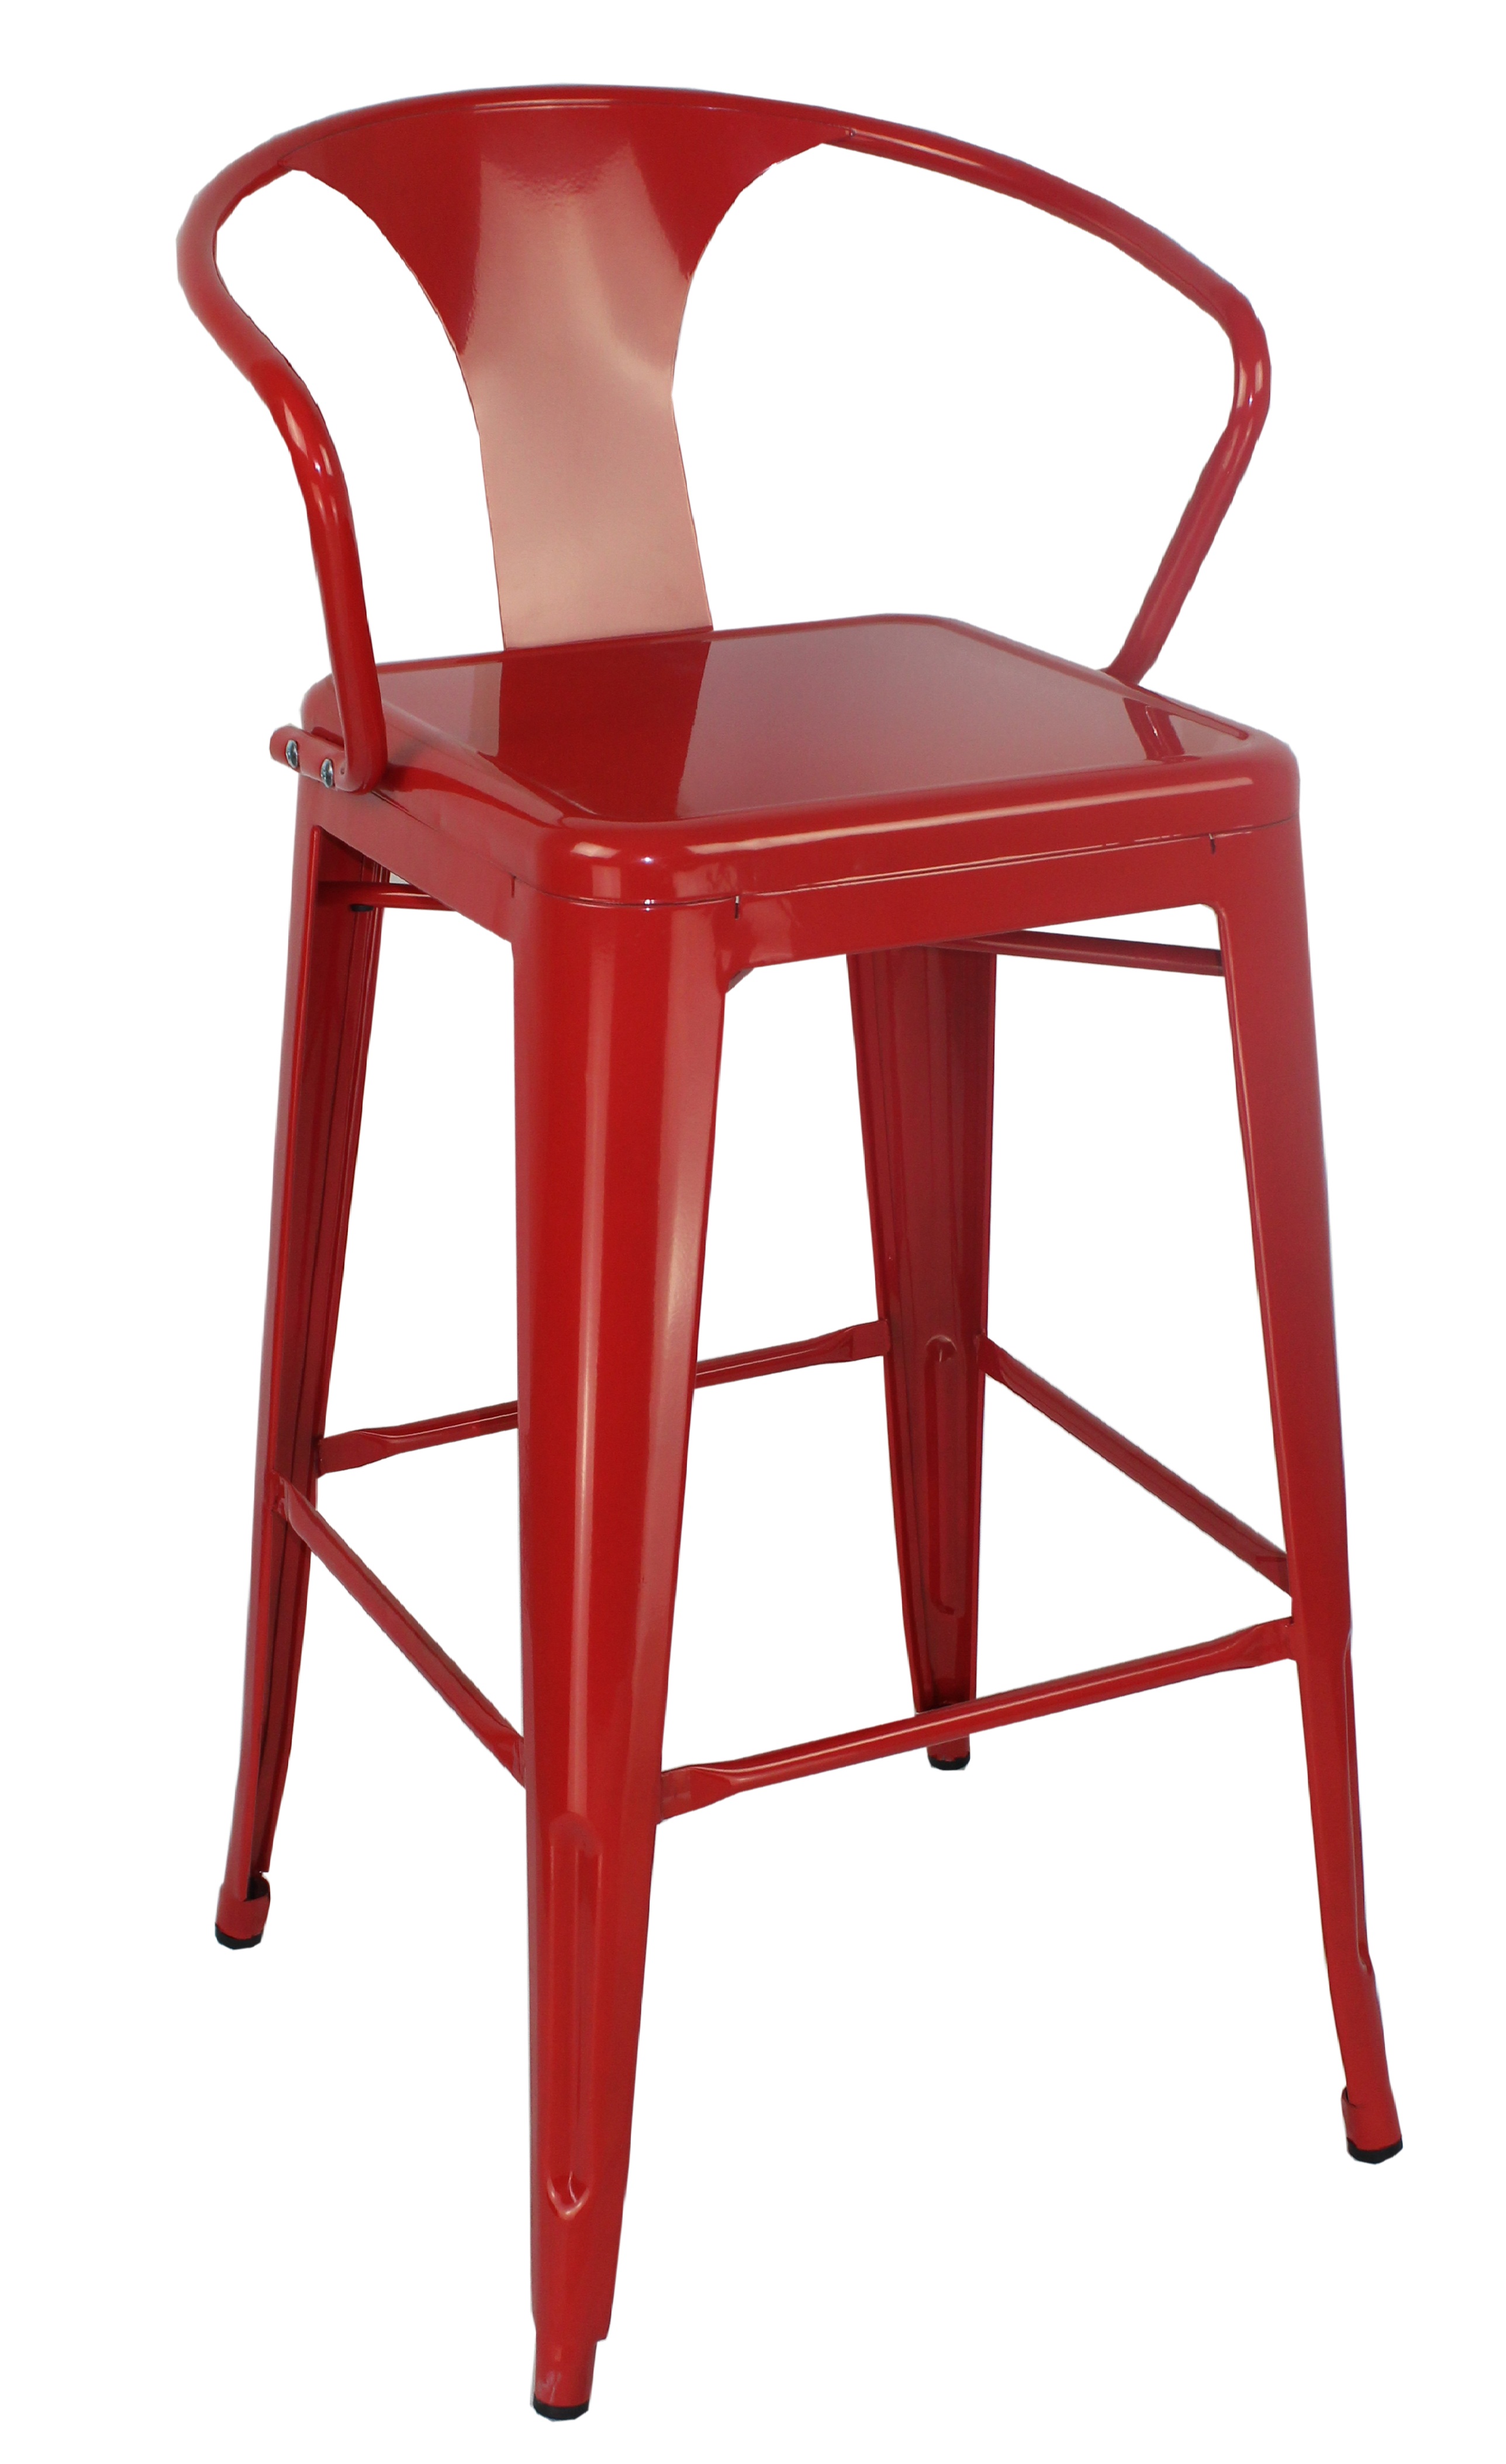 Metal Bar Chair Supplier